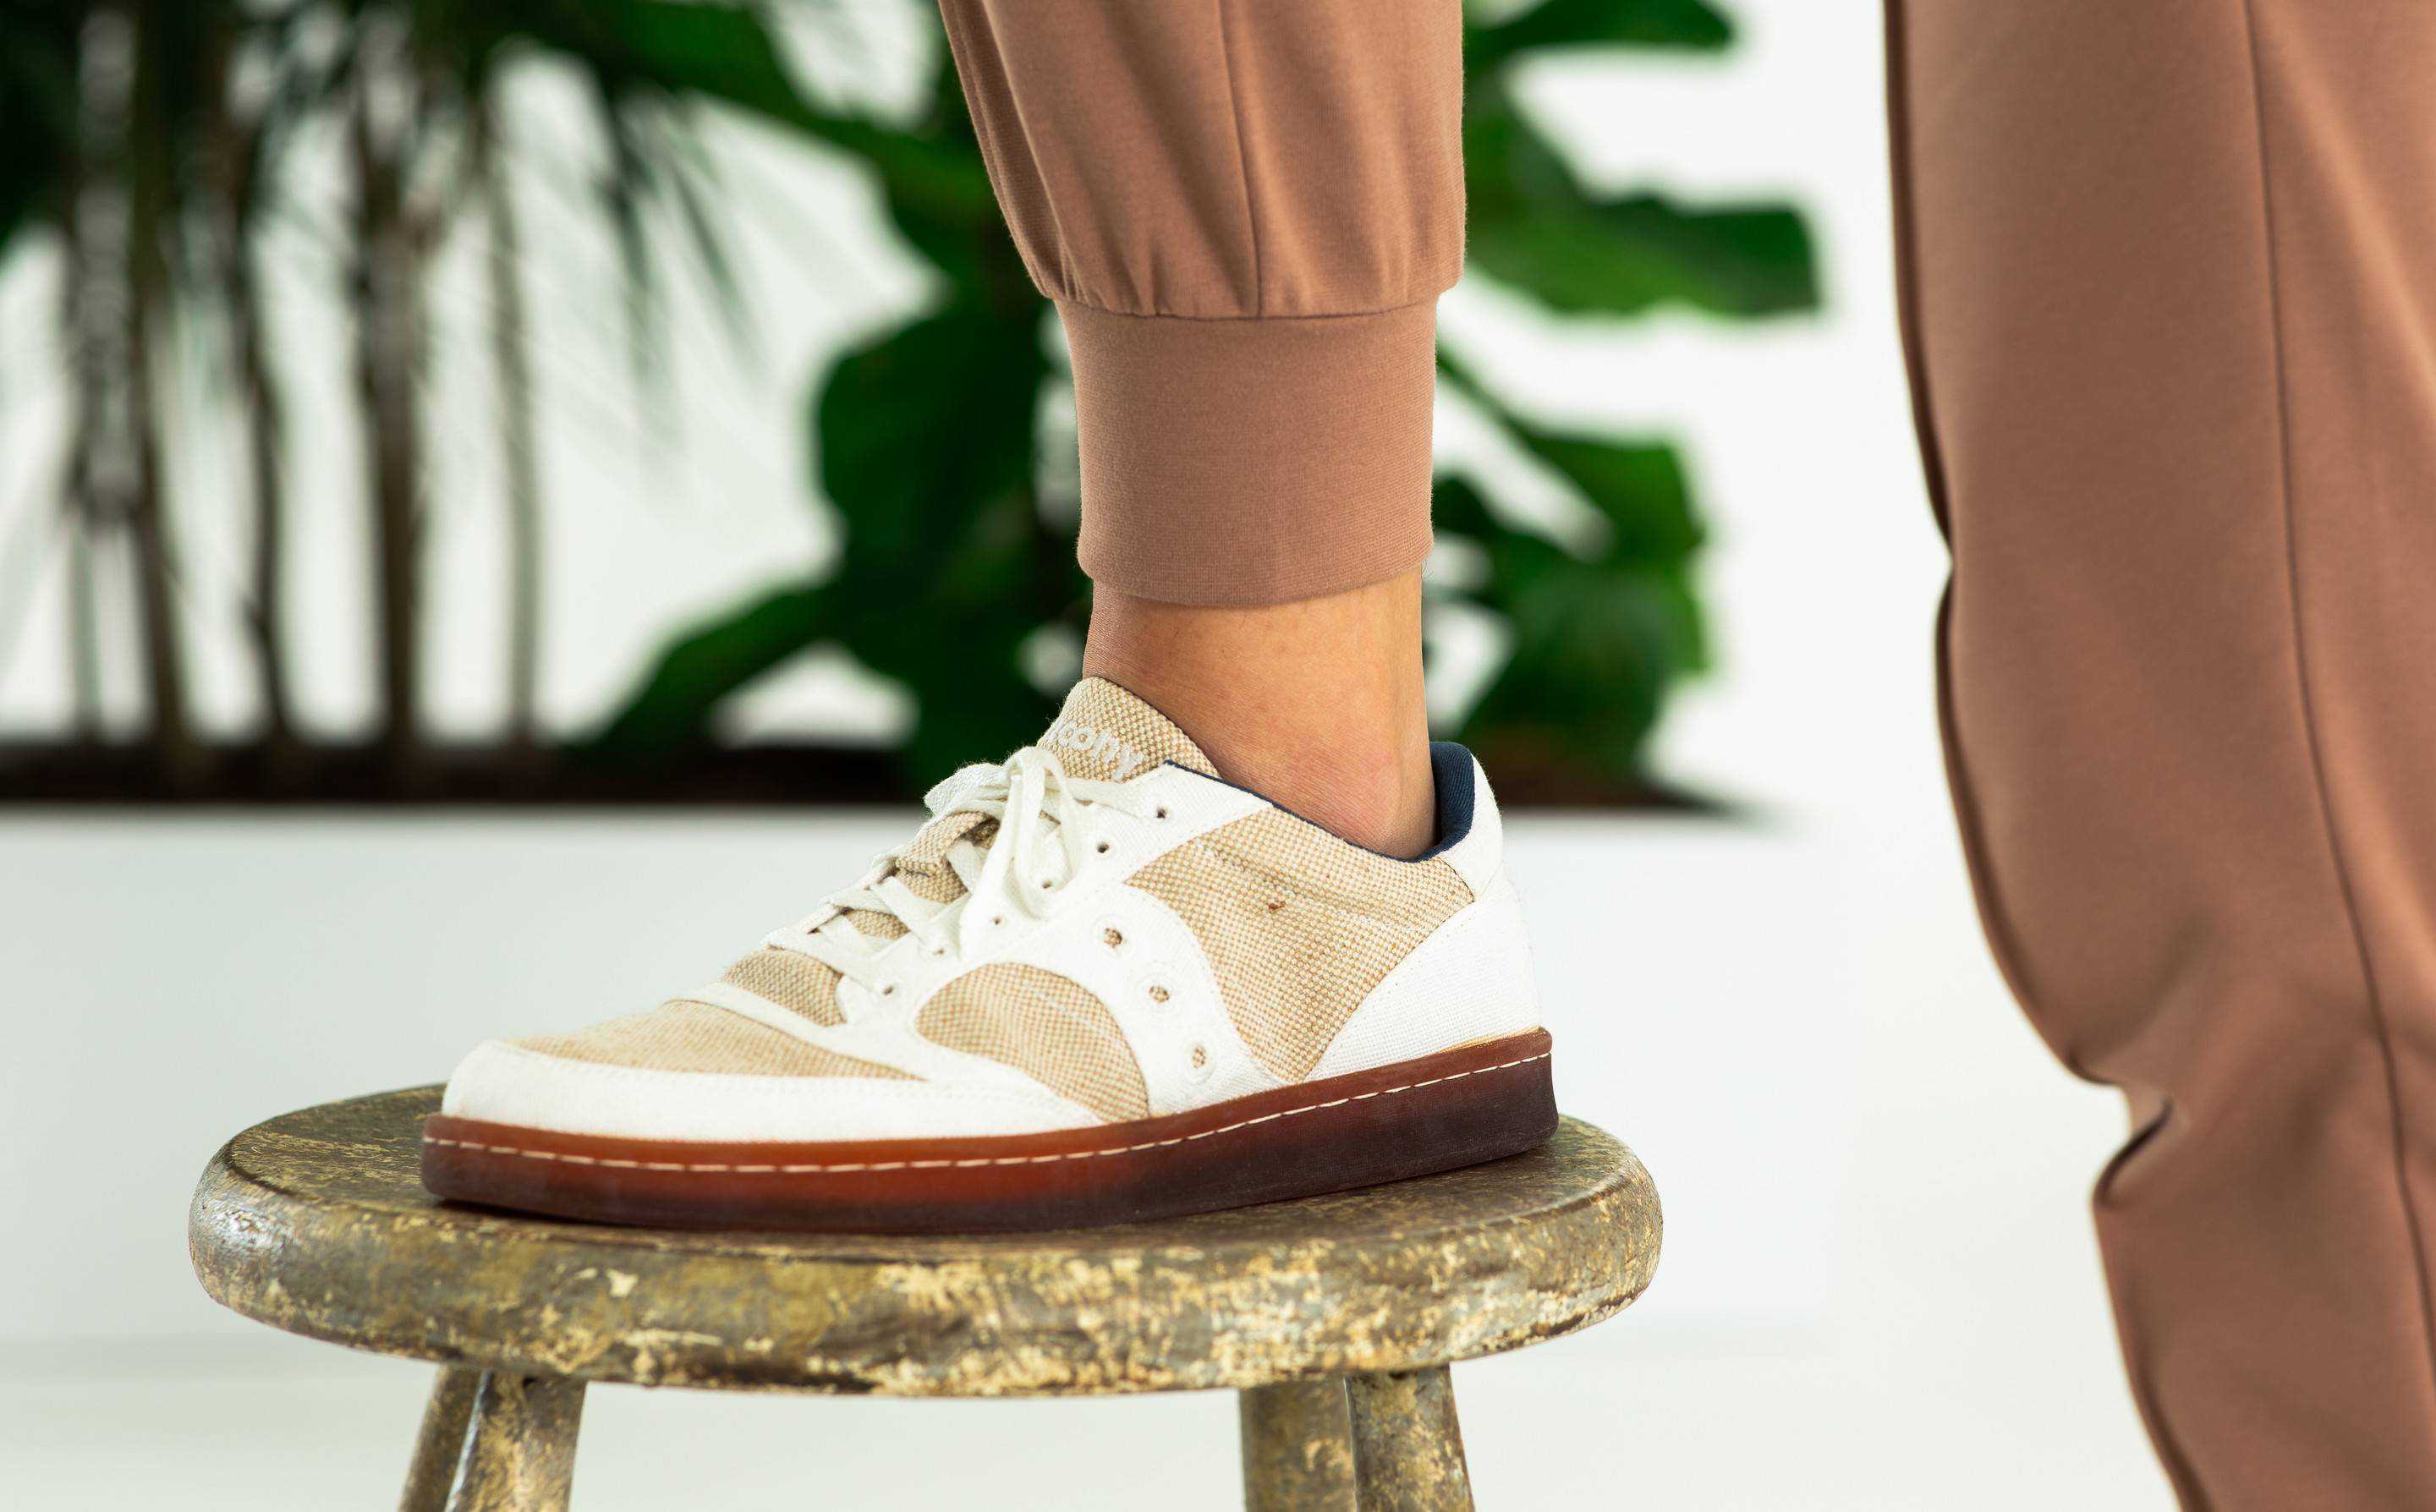 Saucony Originals launch zero-percent plastic material shoe